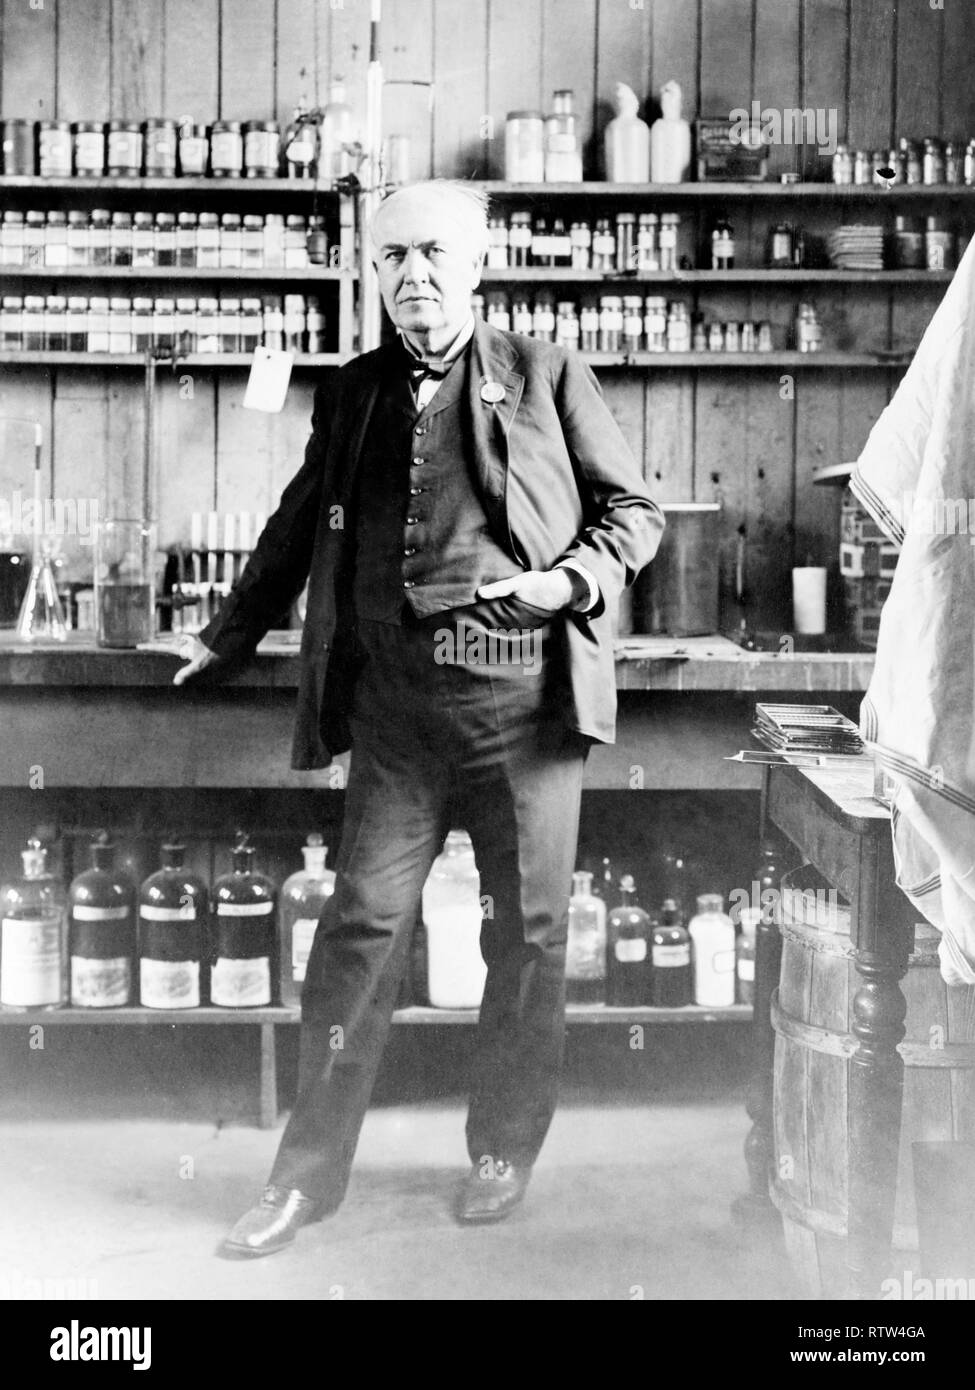 Thomas Alva Edison dans son laboratoire vers 1911 Droit mis à jour à l'aide de techniques de retouche et de restauration numérique Banque D'Images